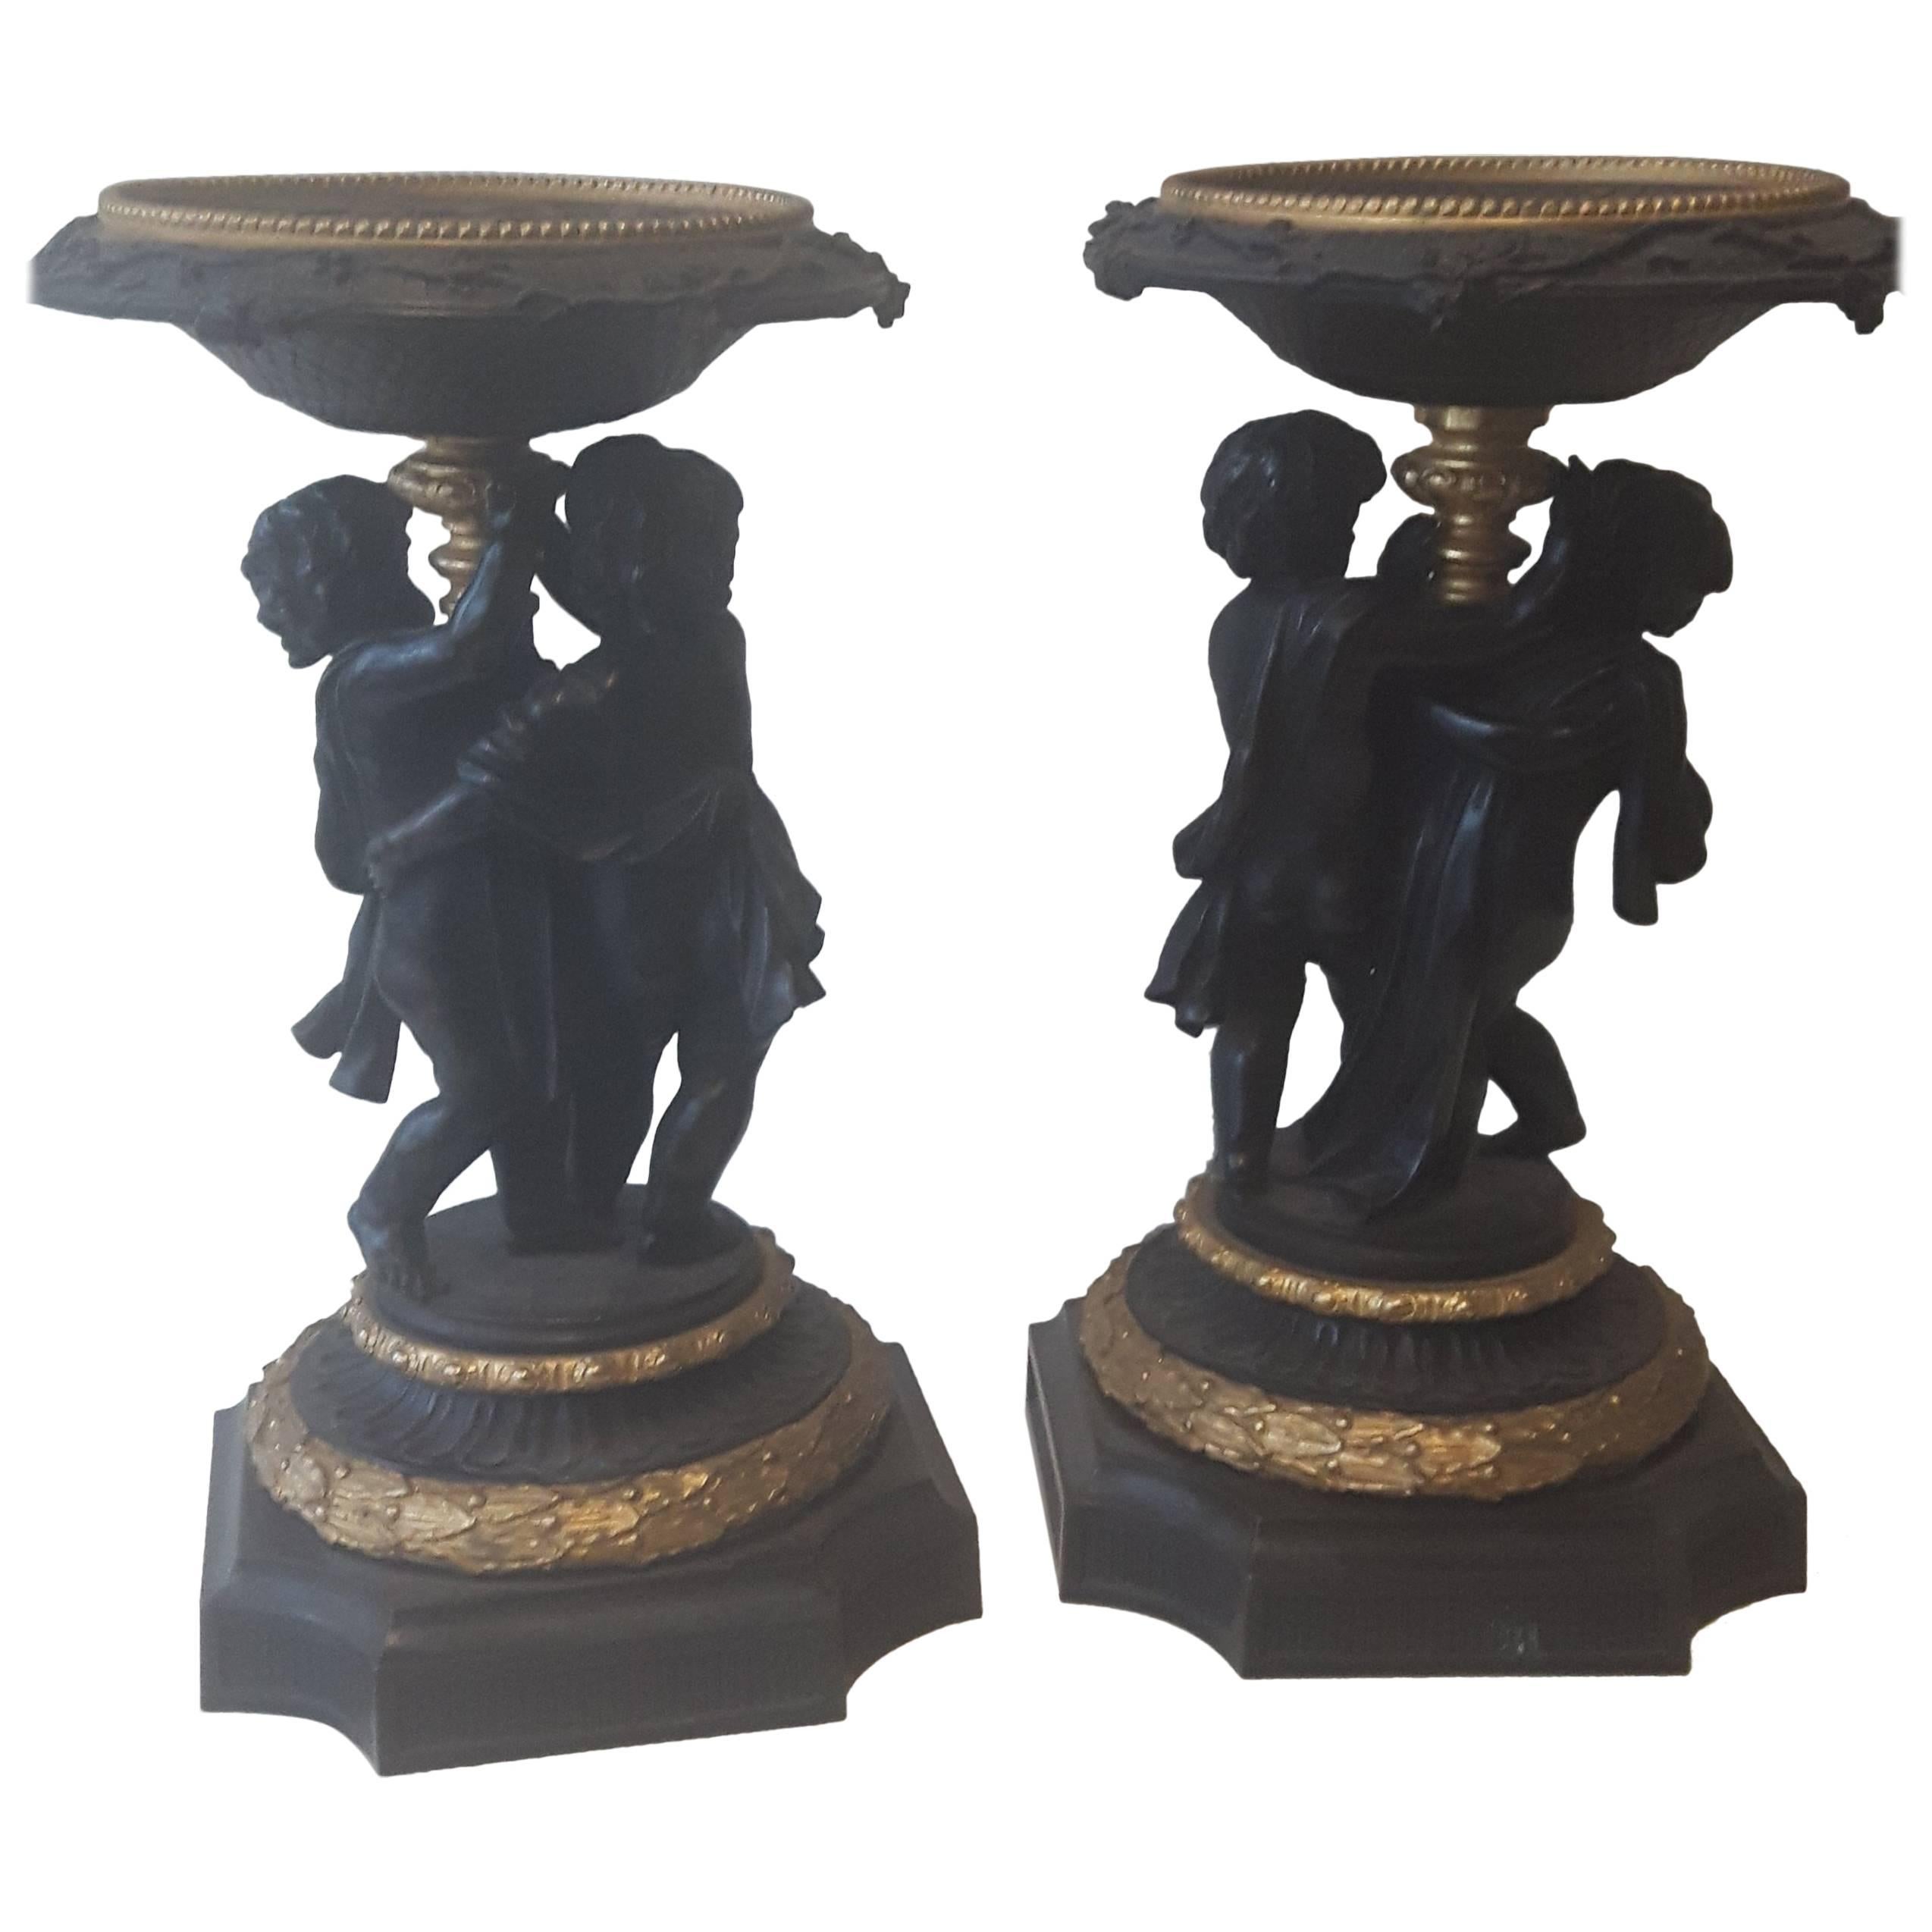 Pair of 19th Century Bronze and Ormolu Tazzas